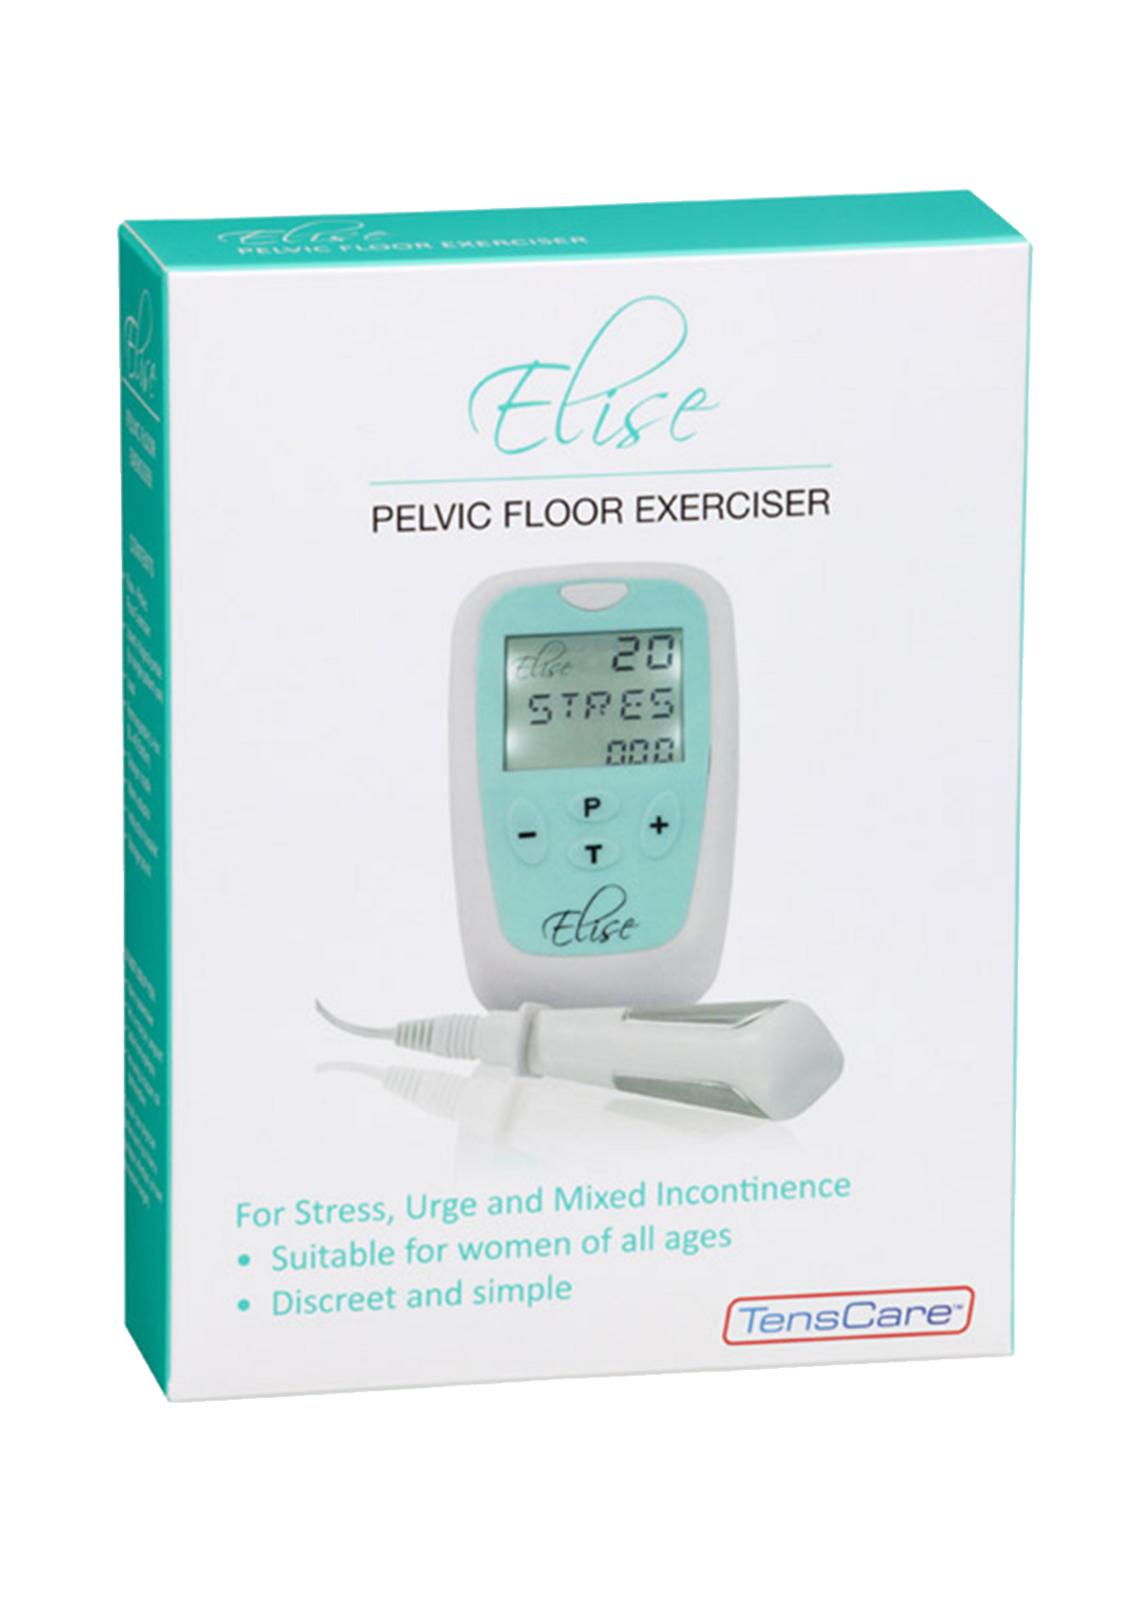 Elise 2 Pelvic Floor Exerciser